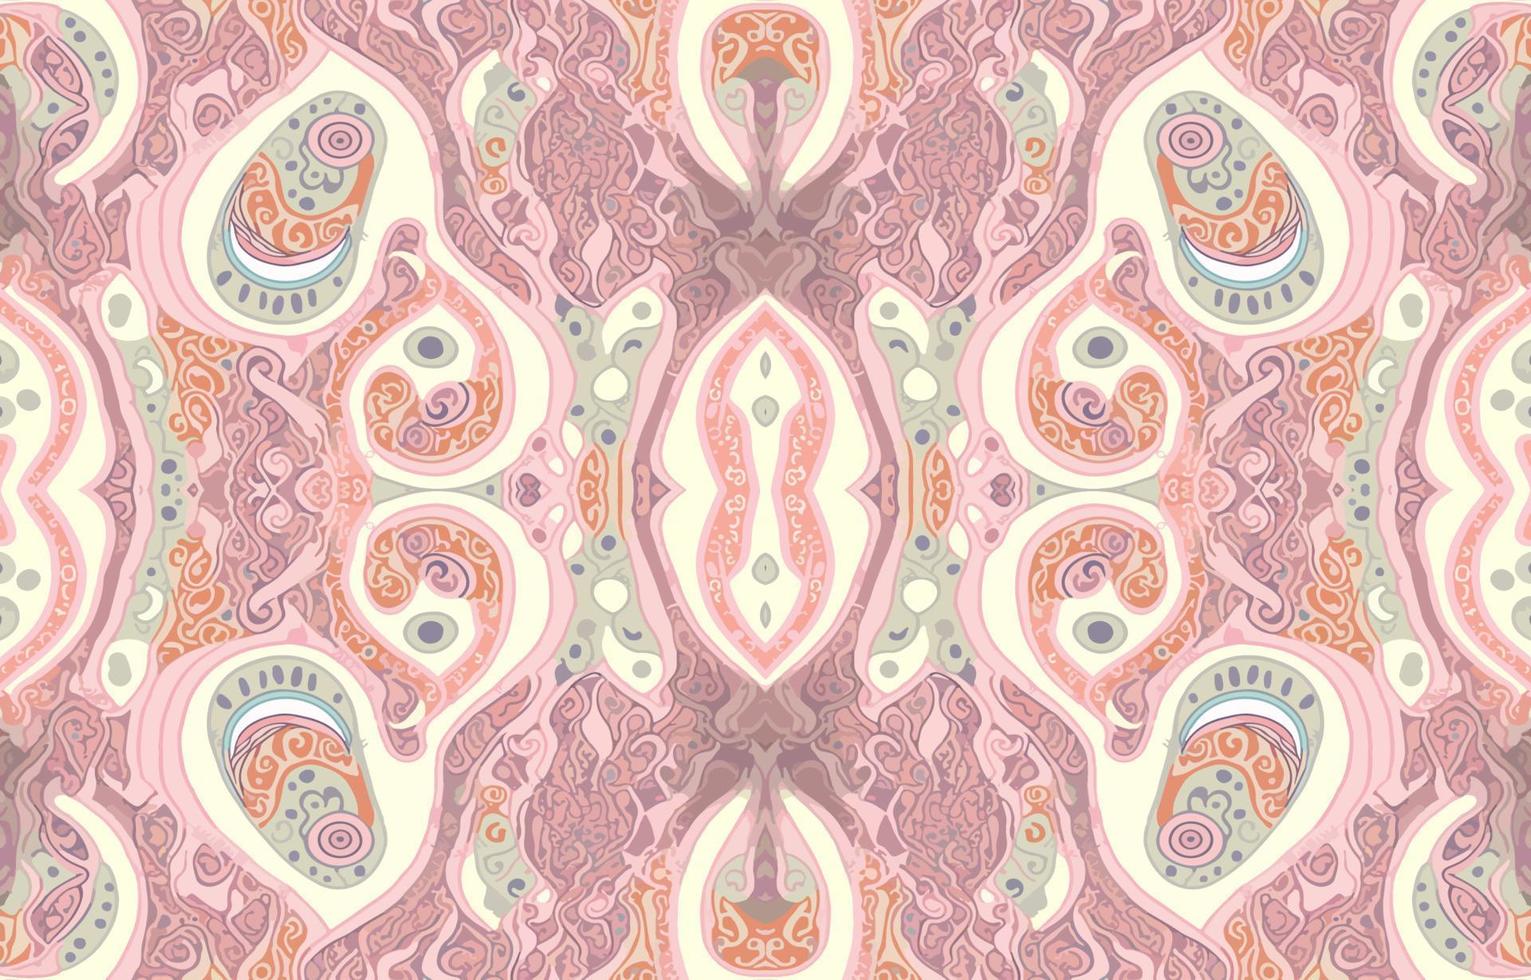 Afrikaanse ikat paisley naadloos patroon roze pastel kleur. abstract traditioneel volk antiek grafisch paisley lijn. structuur textiel vector illustratie overladen elegant luxe wijnoogst retro stijl.